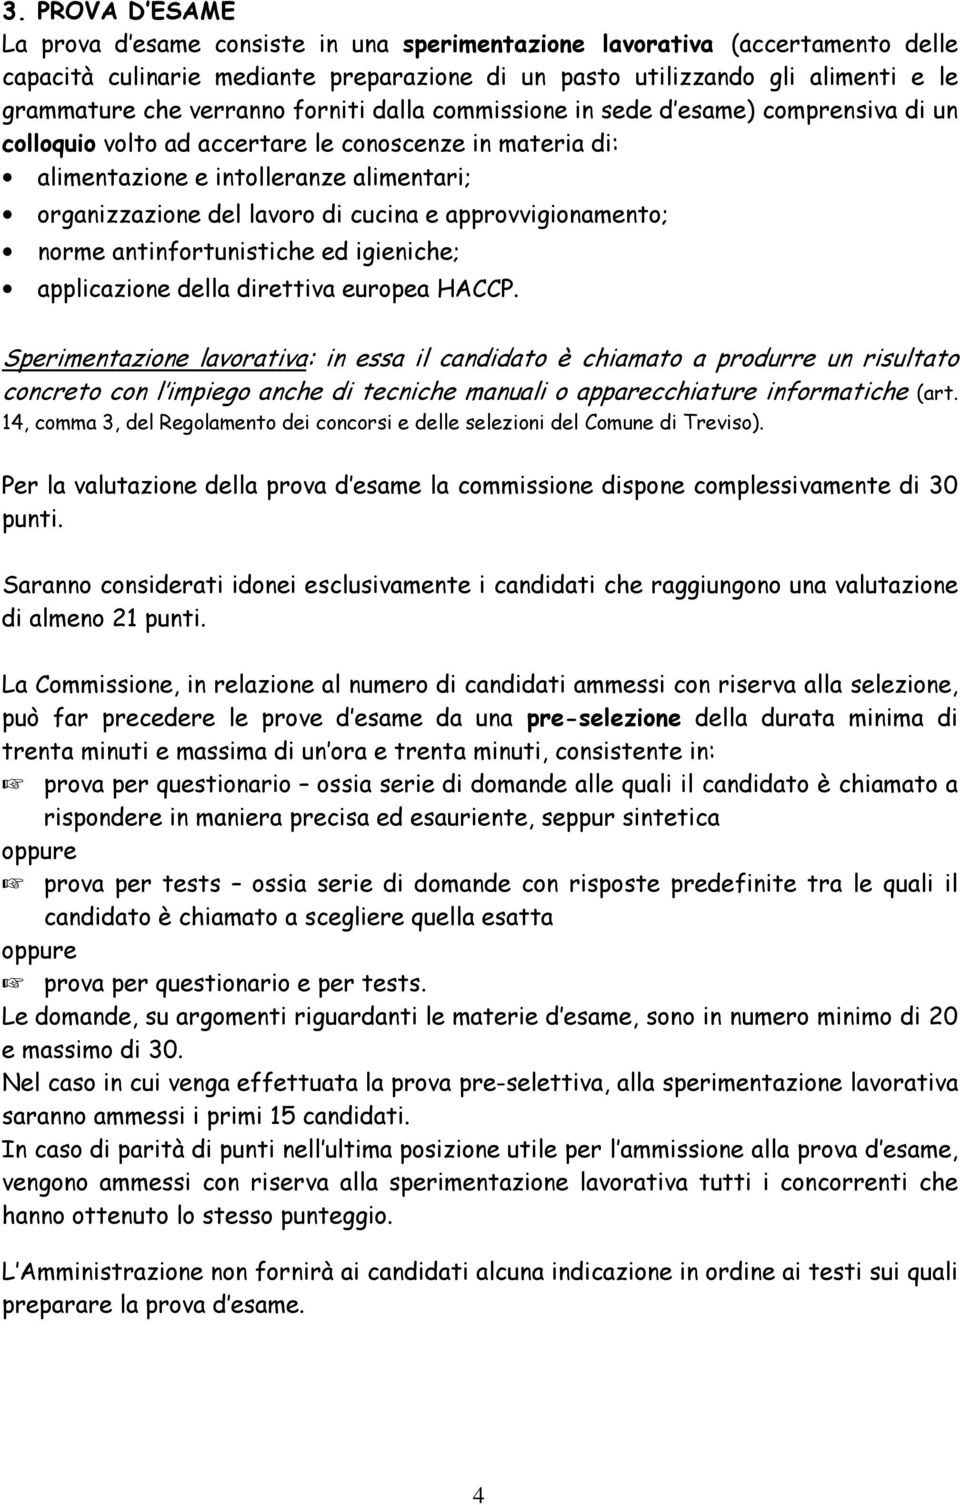 cucina e approvvigionamento; norme antinfortunistiche ed igieniche; applicazione della direttiva europea HACCP.